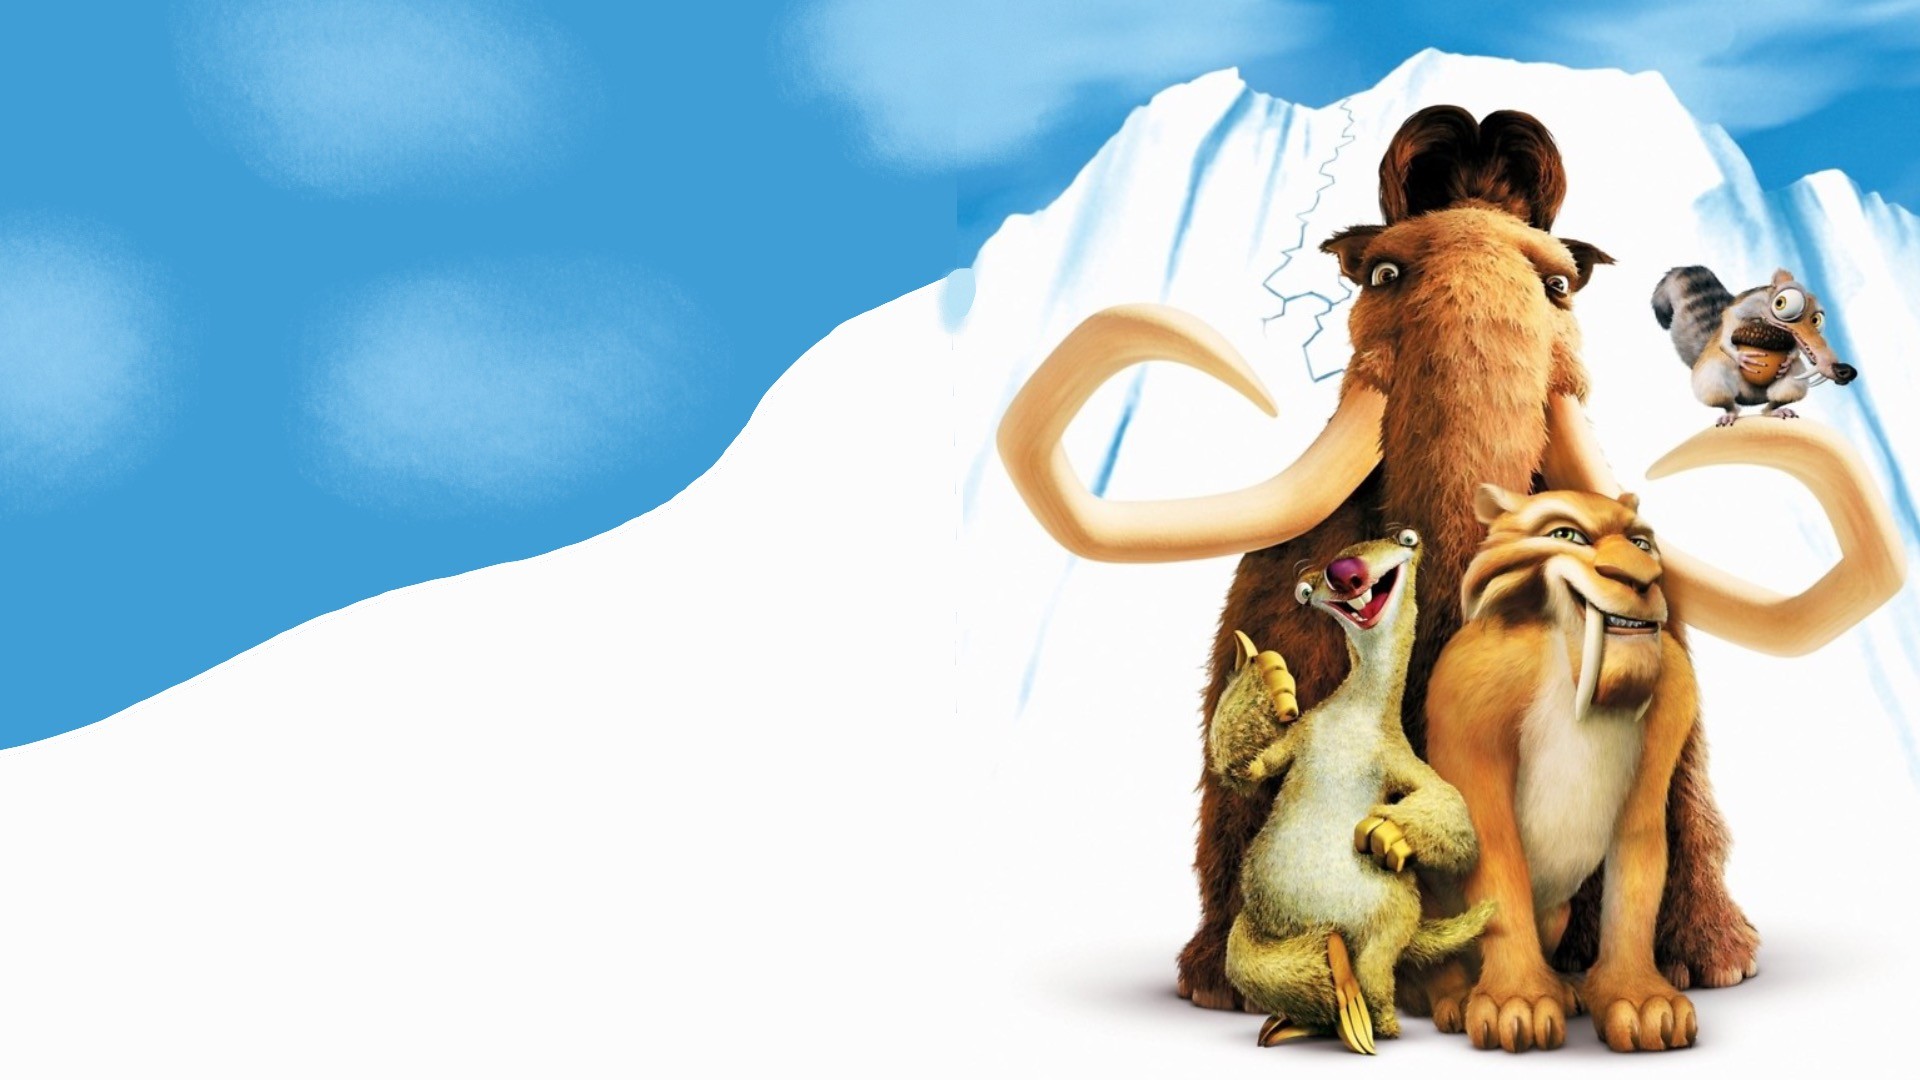 مجموعه فیلم های Ice Age (عصر یخبندان) بدون سانسور